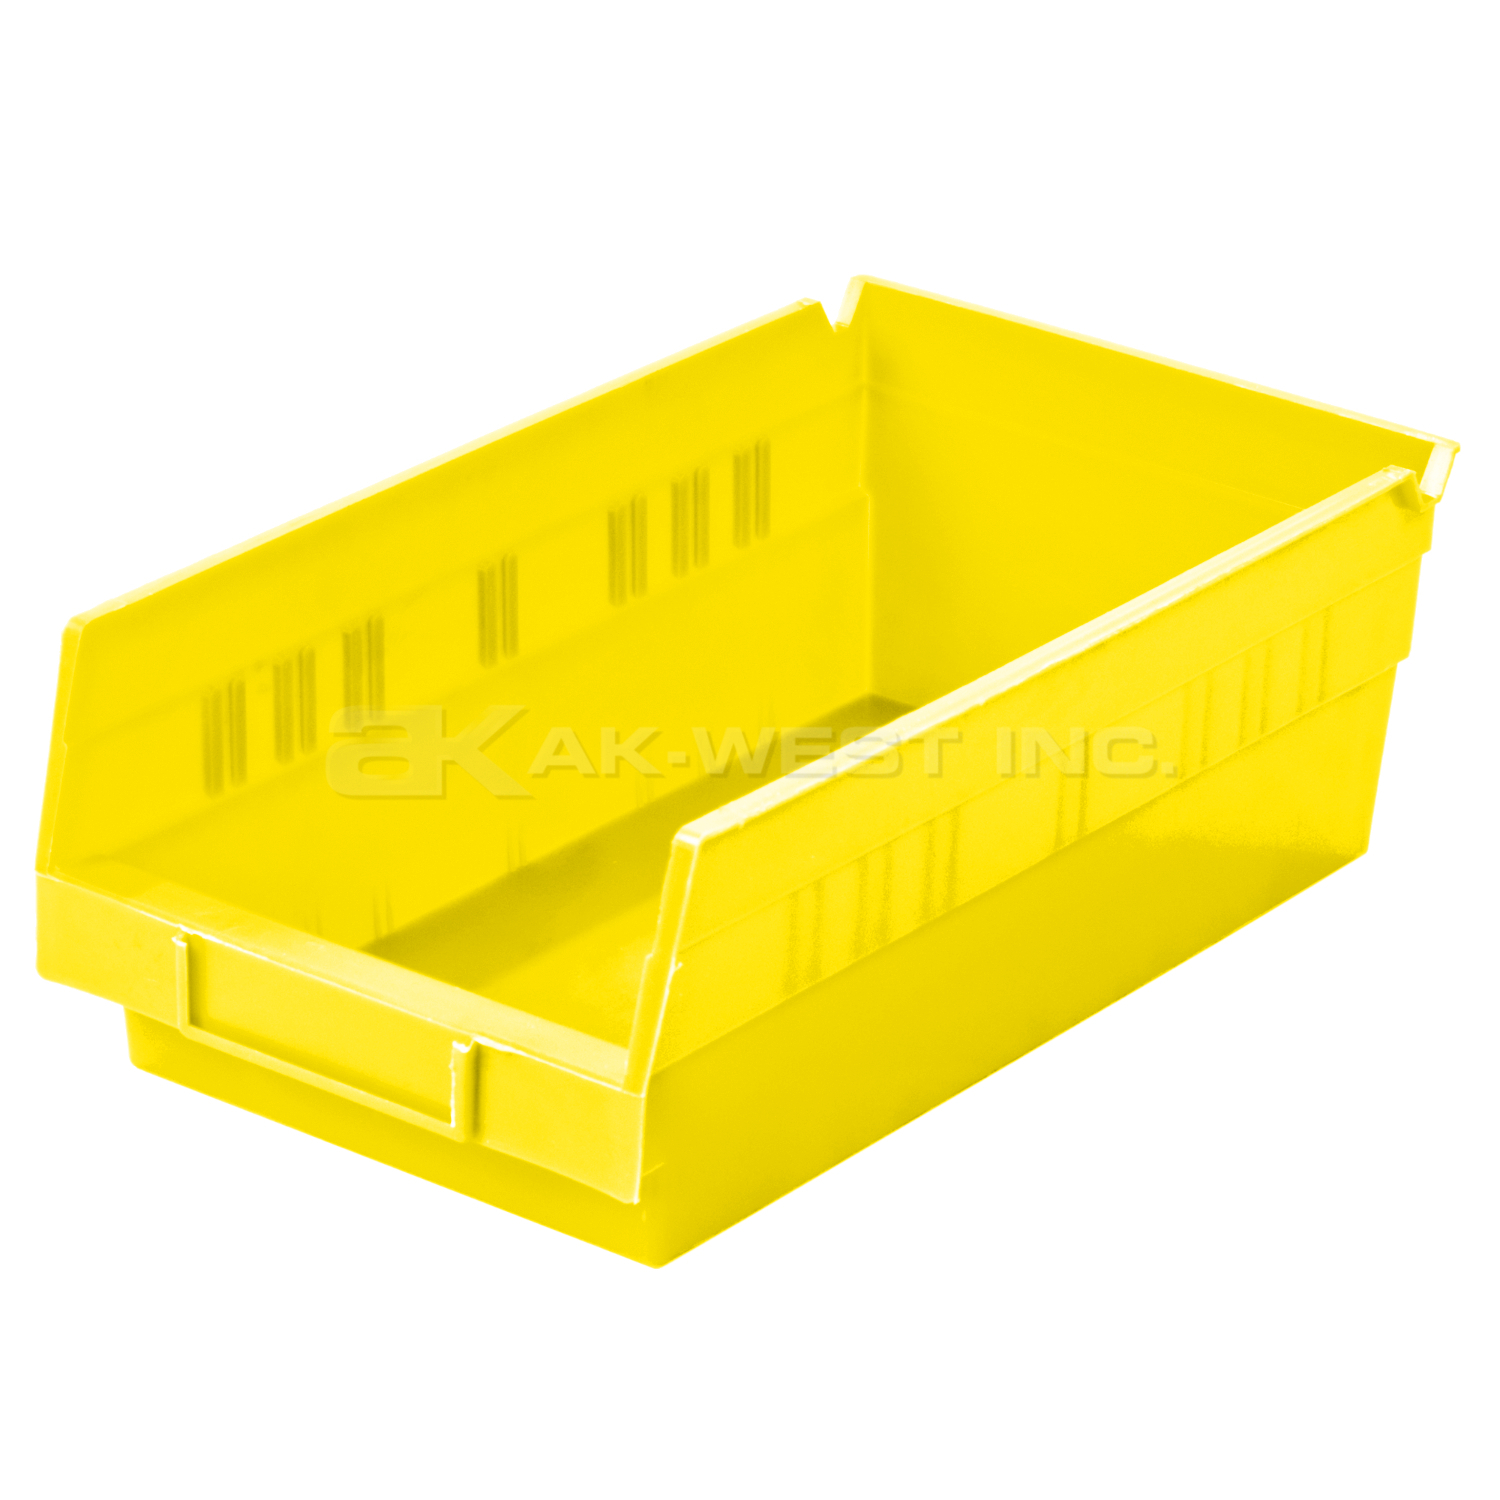 Yellow, 11-5/8" x 6-5/8" x 4" Shelf Bin (12 Per Carton)